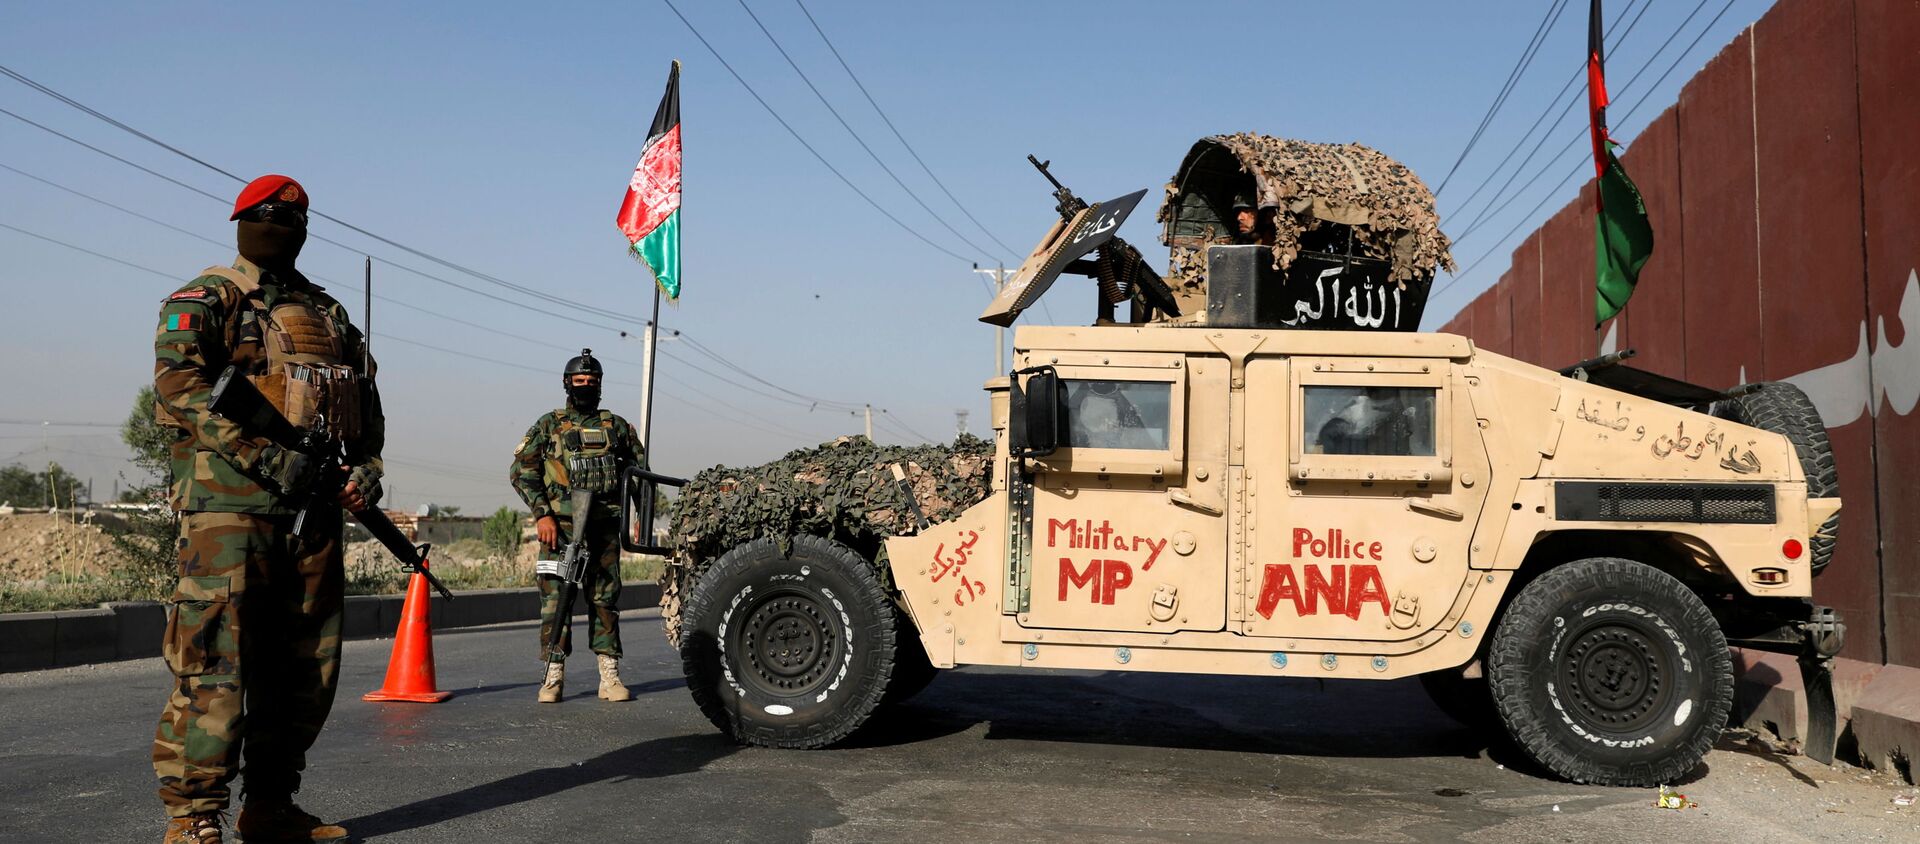 Офицеры Афганской национальной армии несут вахту на контрольно-пропускном пункте в Кабуле, Афганистан, 8 июля 2021 года. - Sputnik Абхазия, 1920, 02.08.2021